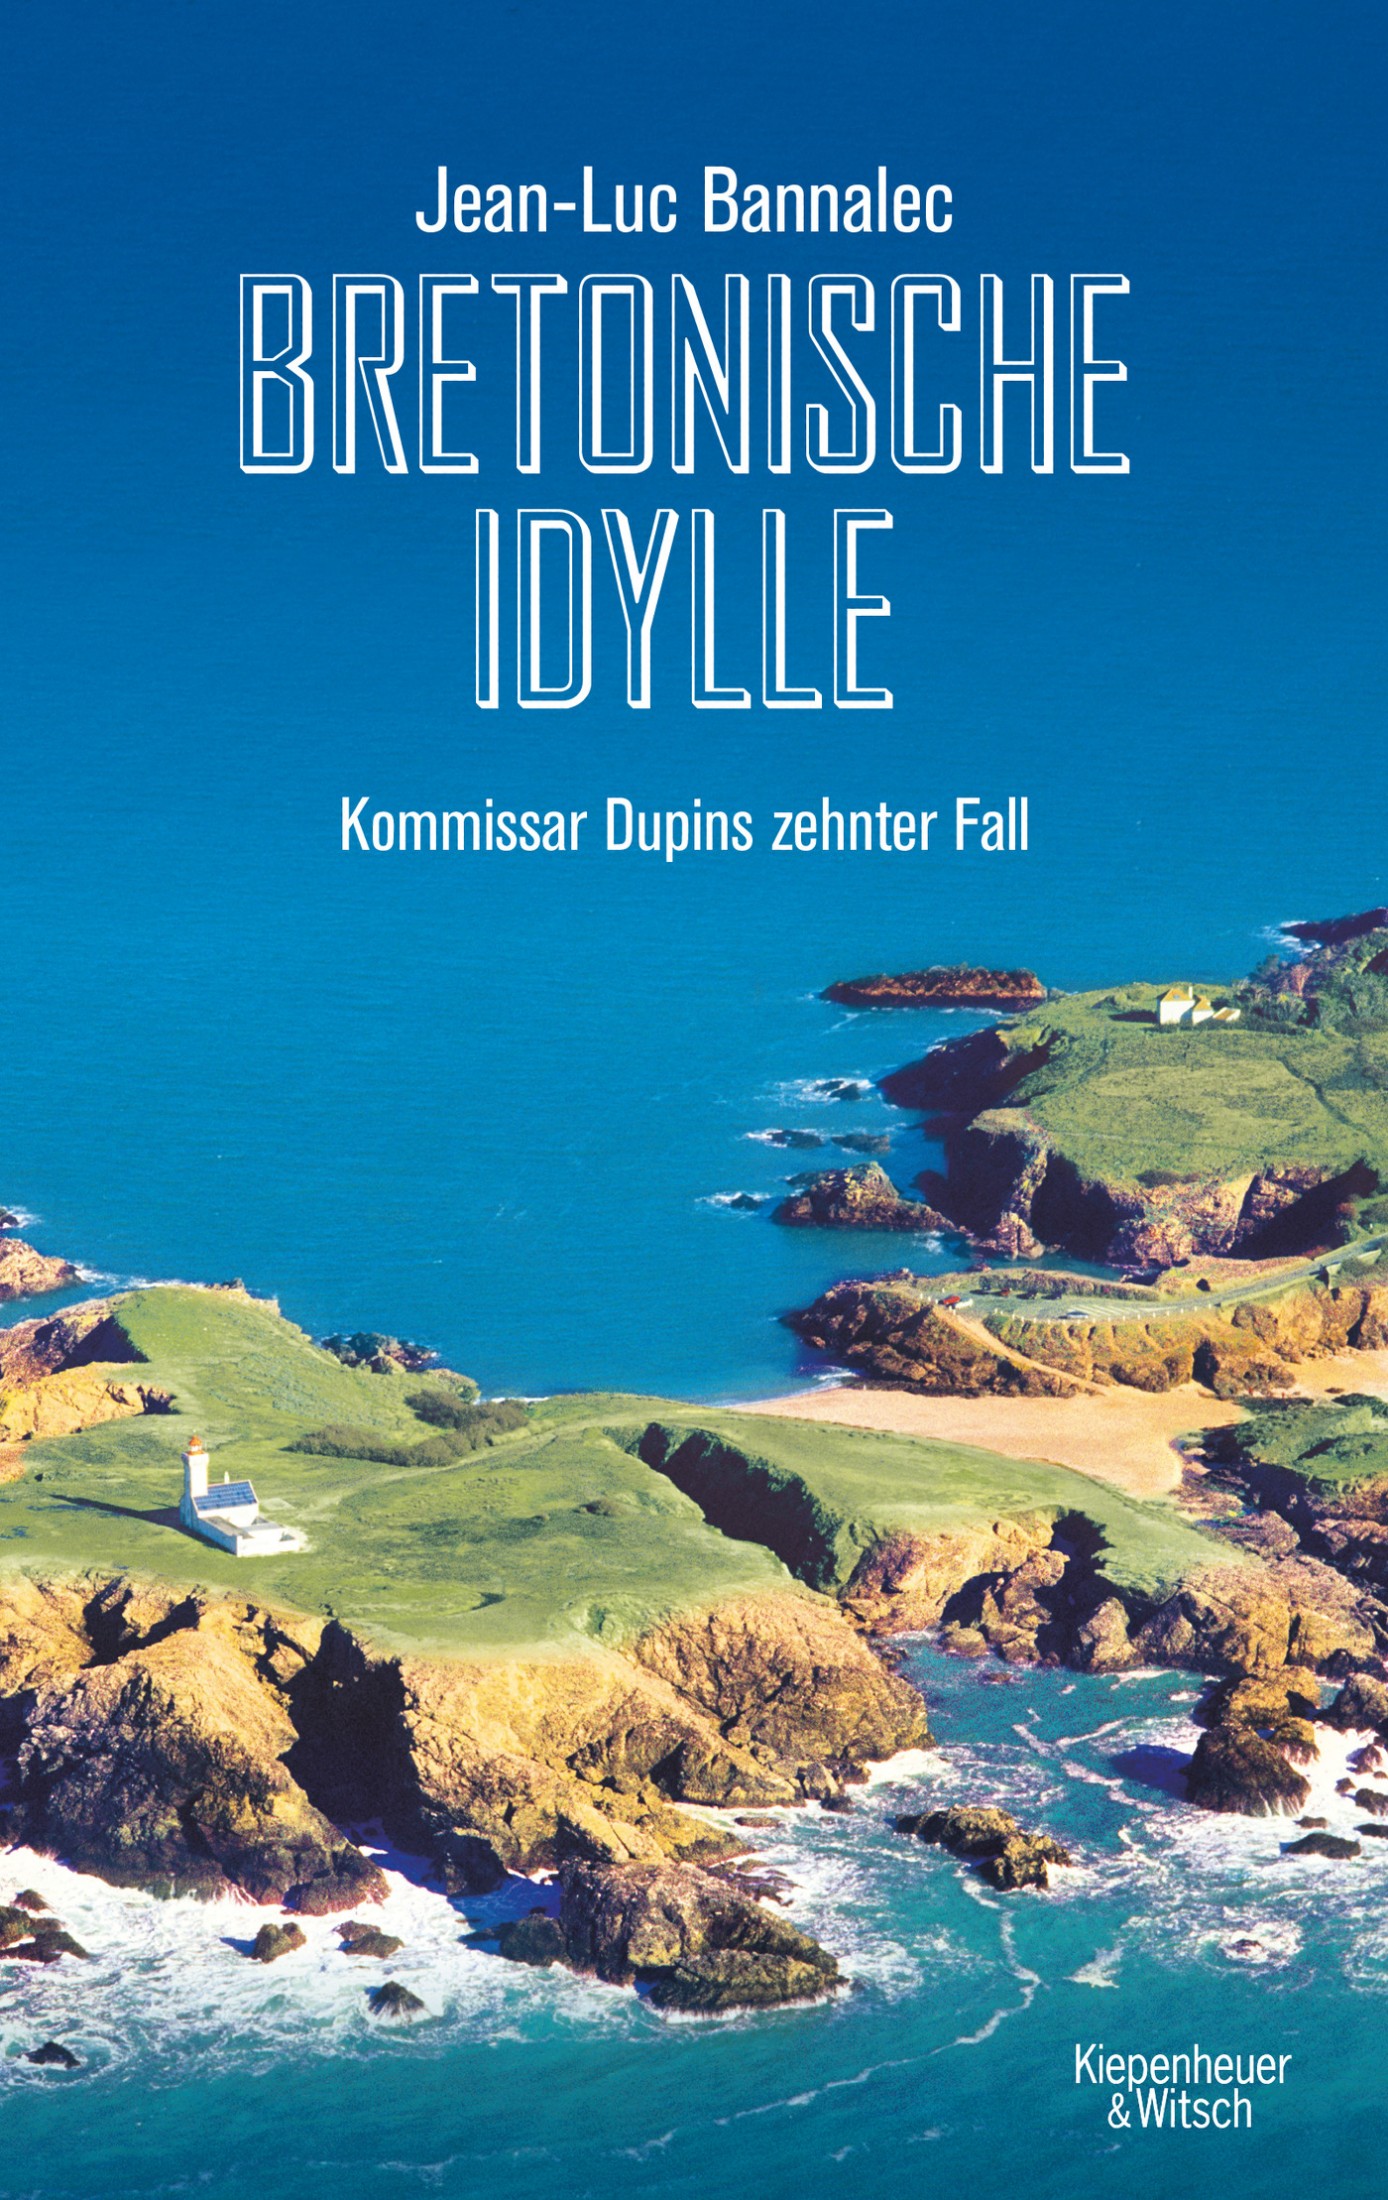 Titelbild zum Buch: Bretonische Idylle